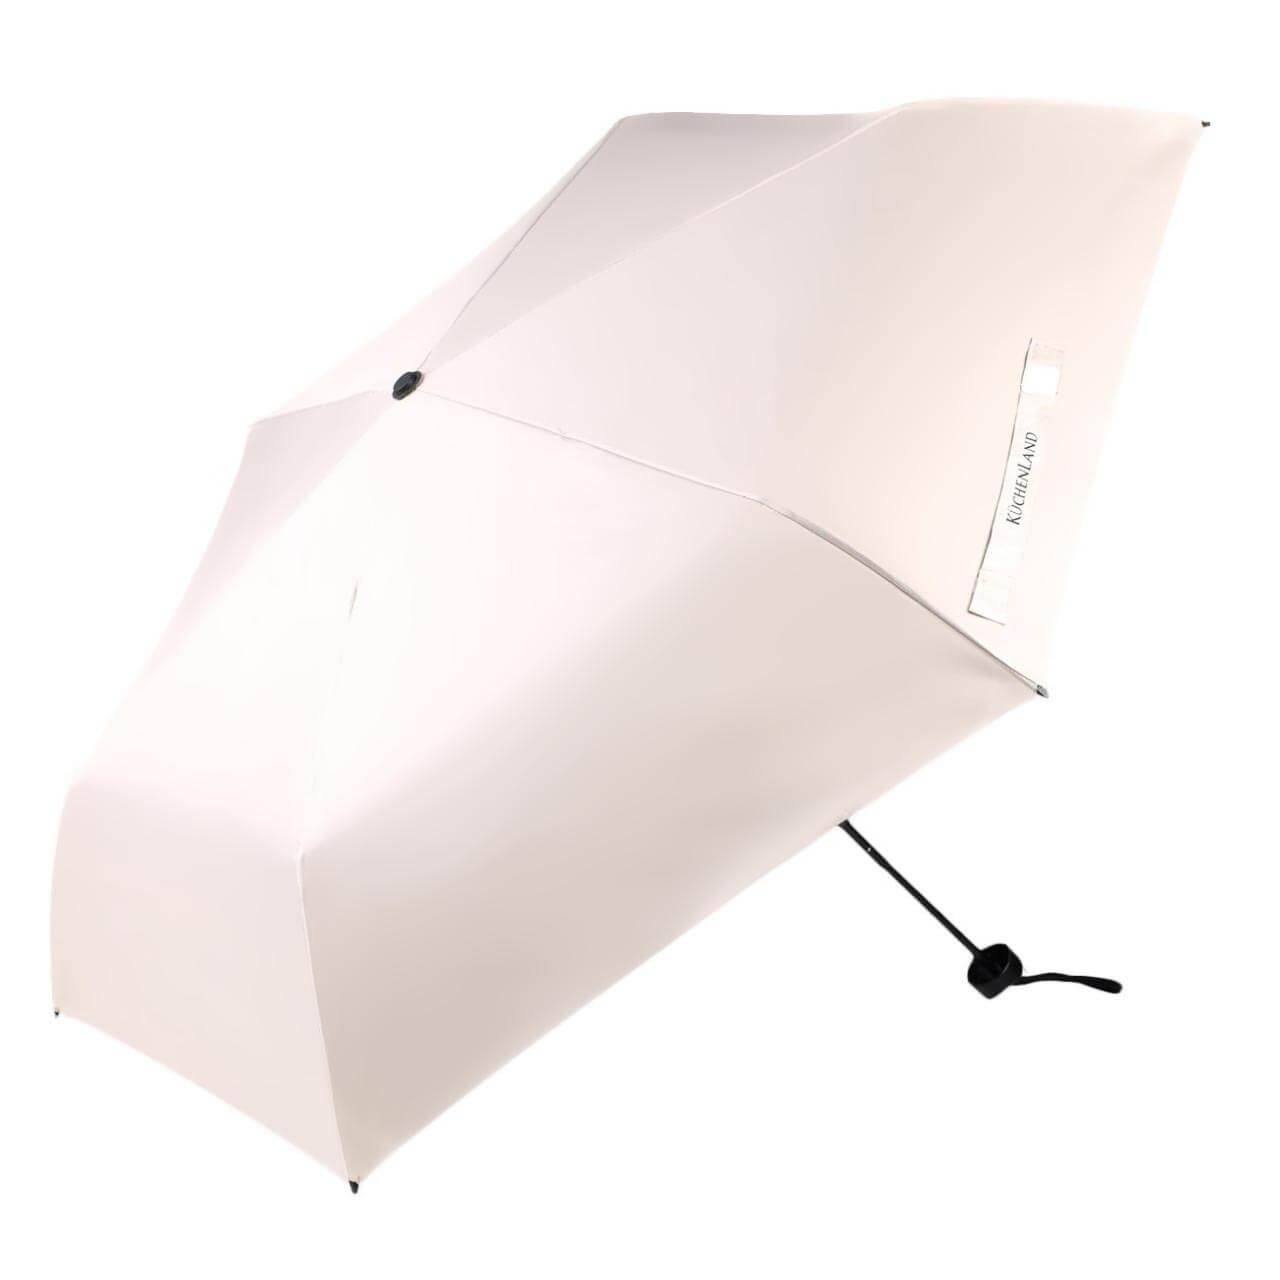 Зонт, 52 см, складной, двусторонний, эпонж, бежево-черный, Rainy day двусторонний тетрис